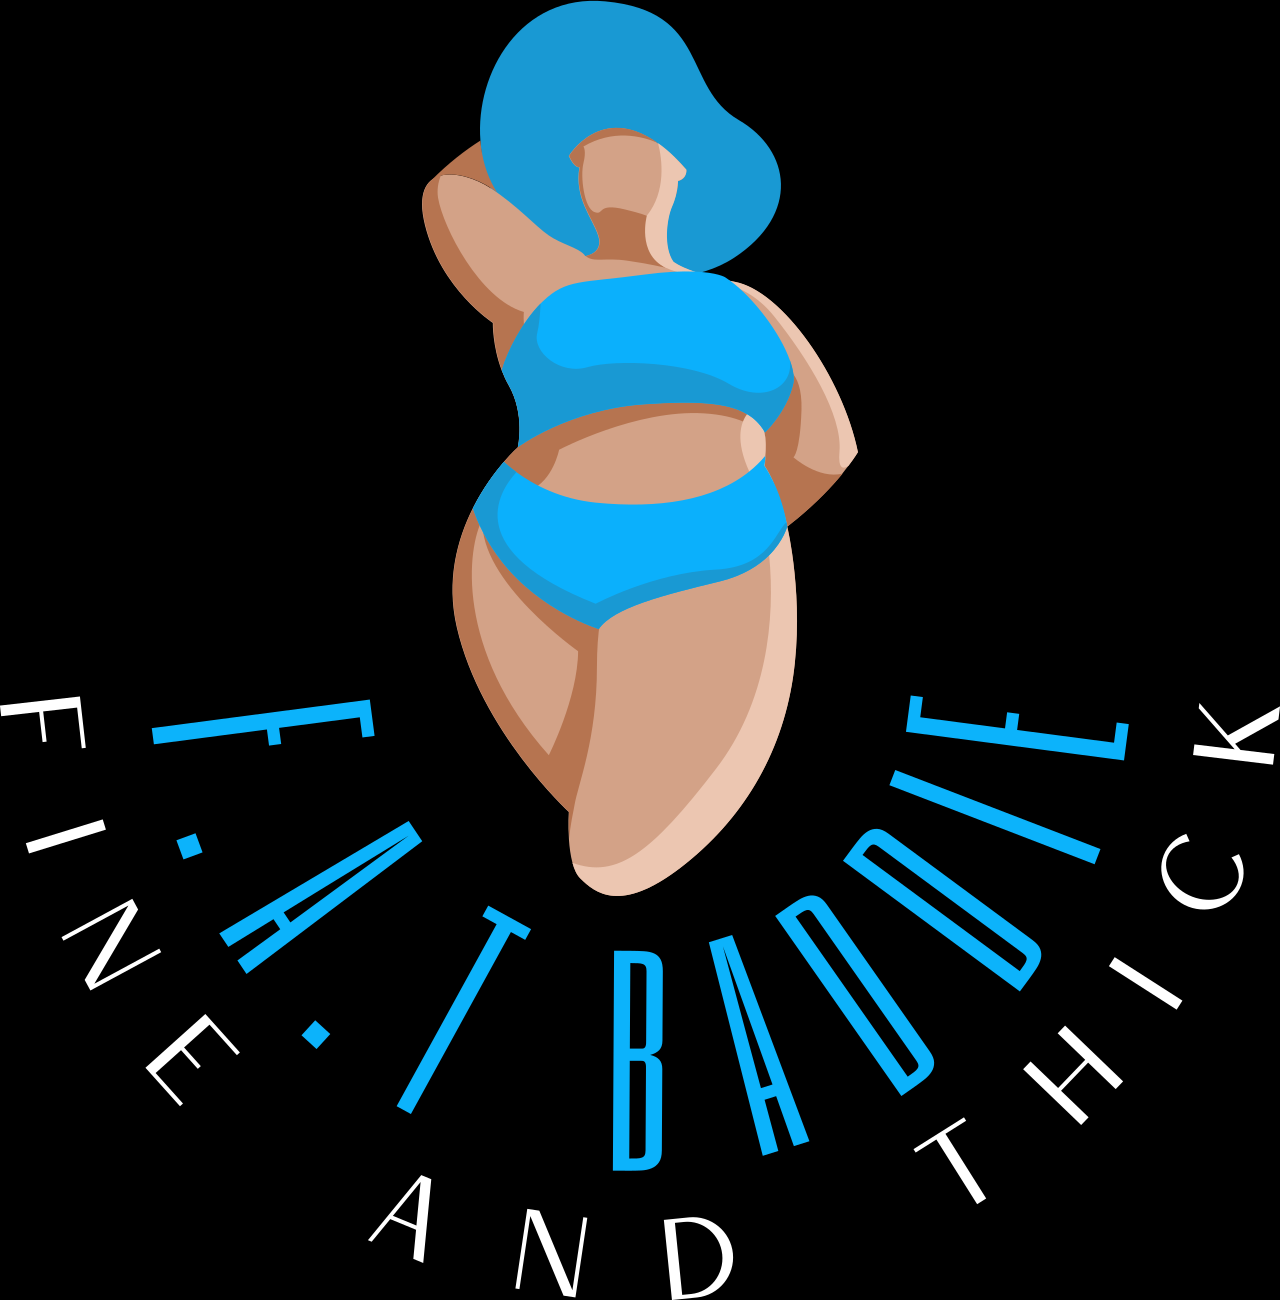 F.A.T BADDIE's logo